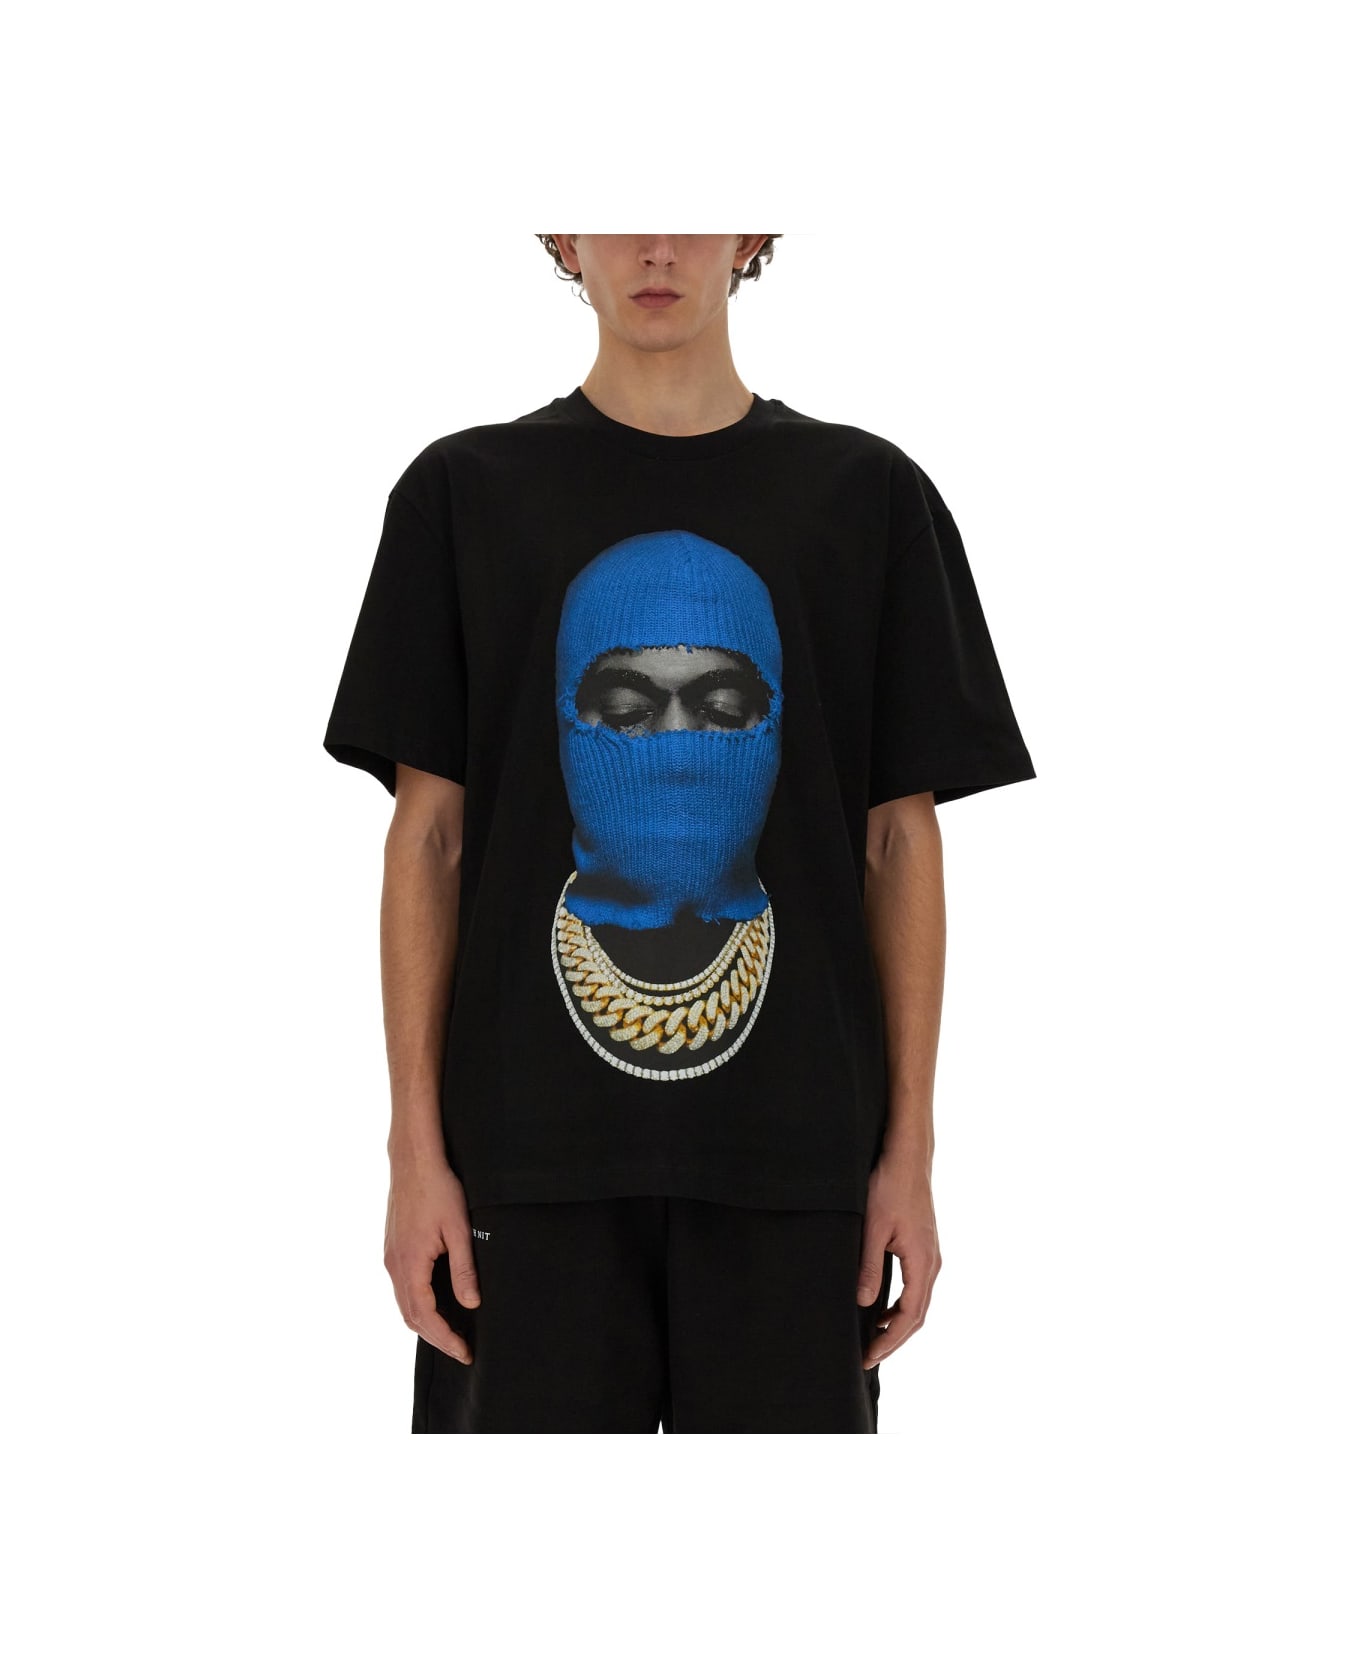 ih nom uh nit T-shirt "mask" - BLACK